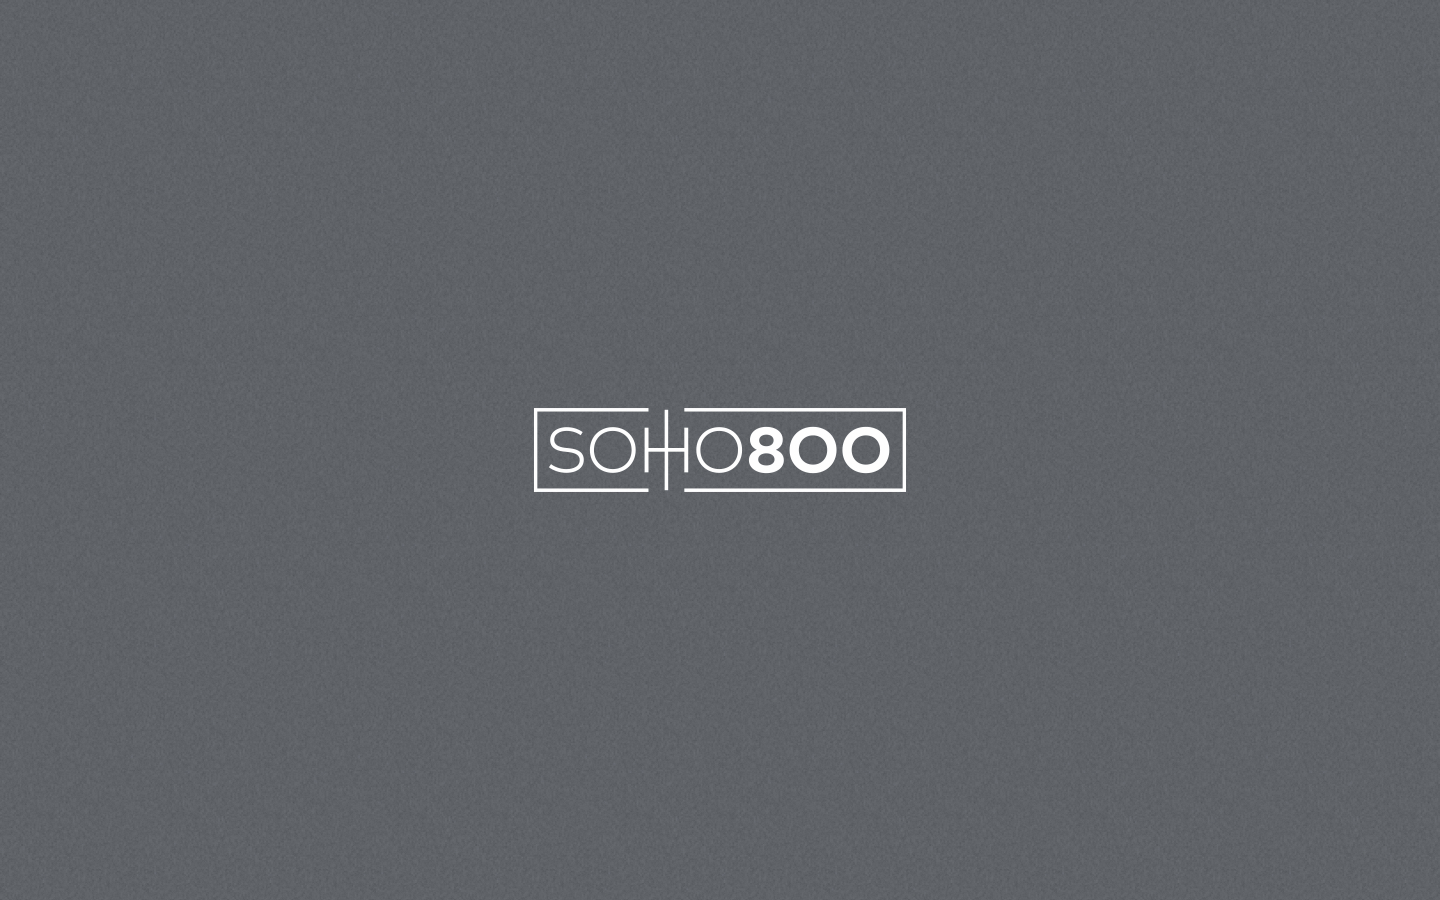  Branding for Soho800. 2019 | More  here . 